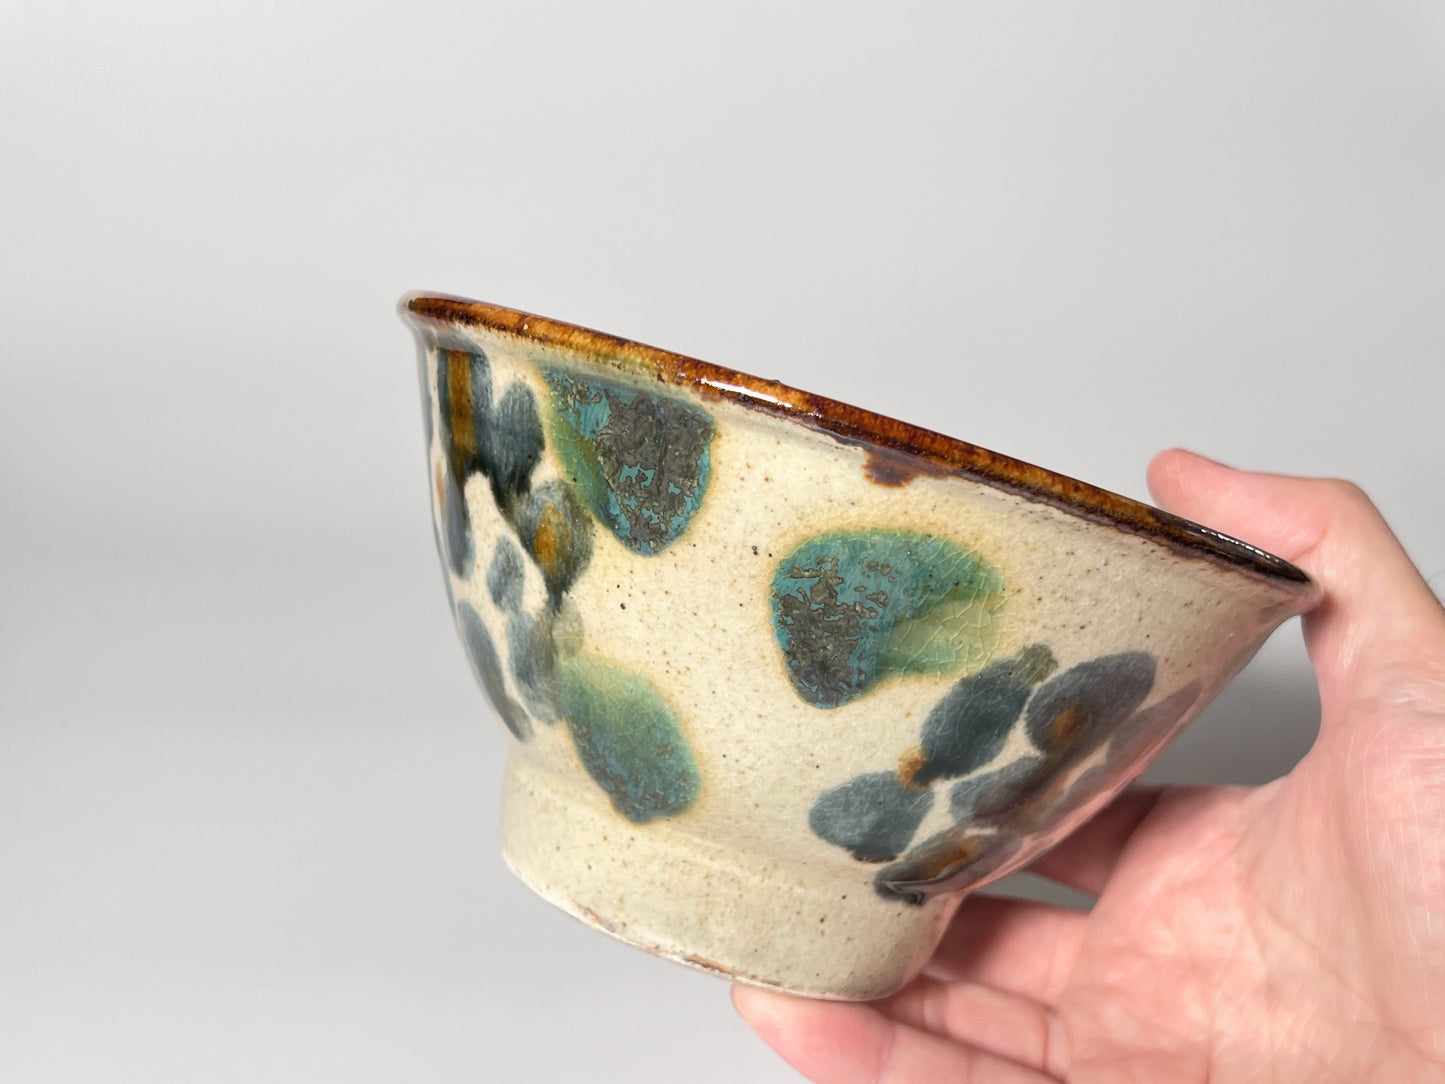 Kimano pottery -Rice bowl 5 inch- Hydrangea